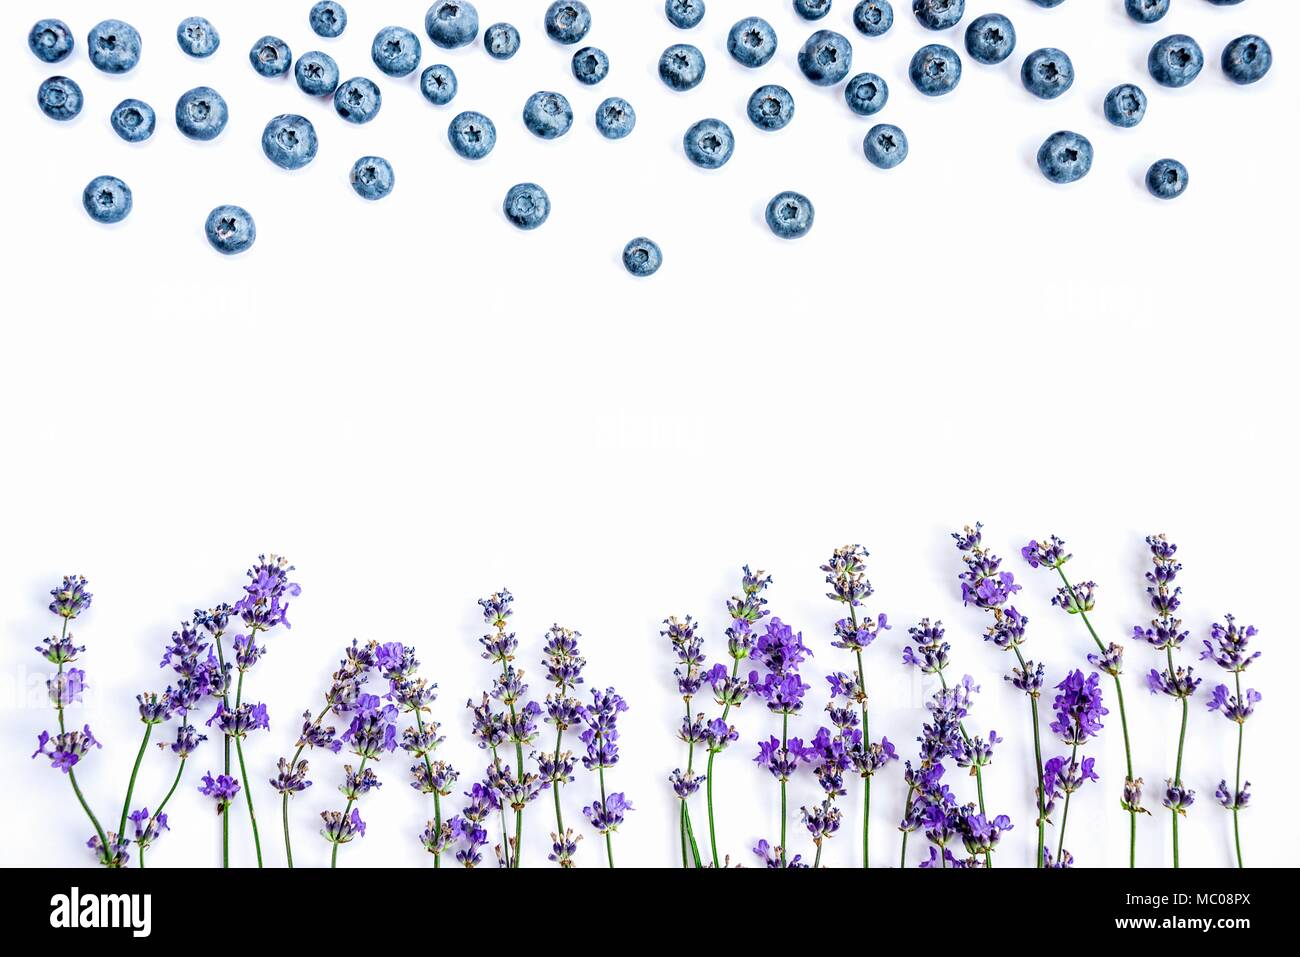 Frische Lavendelblüten und Heidelbeeren auf einem weißen Hintergrund. Lavendelblüten und Blaubeeren mock up. Kopieren Sie Platz. Stockfoto